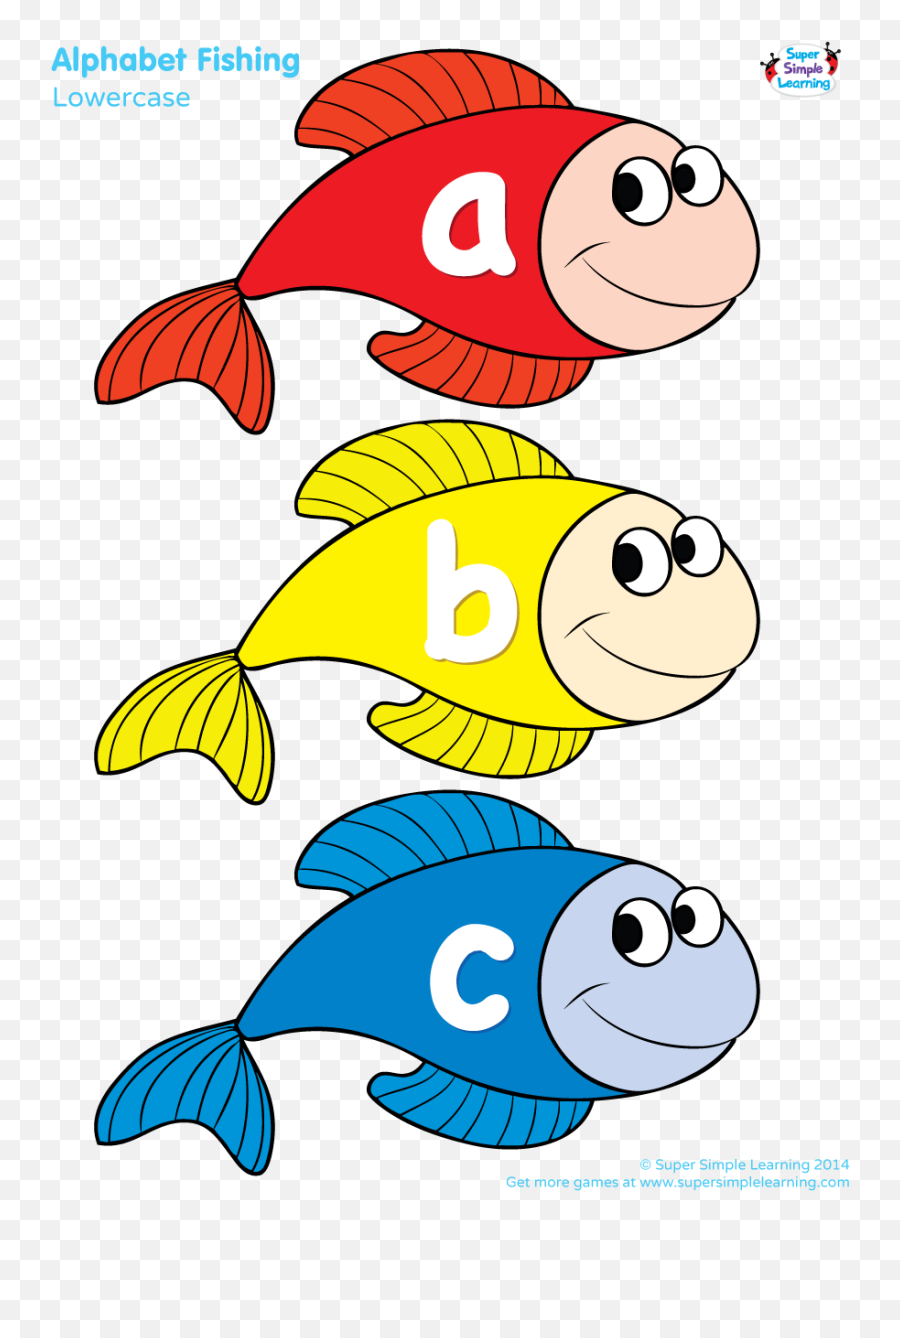 Lowercase Alphabet Fishing Game - Alphabet Fishing Game Printable Emoji,Fish Emotions